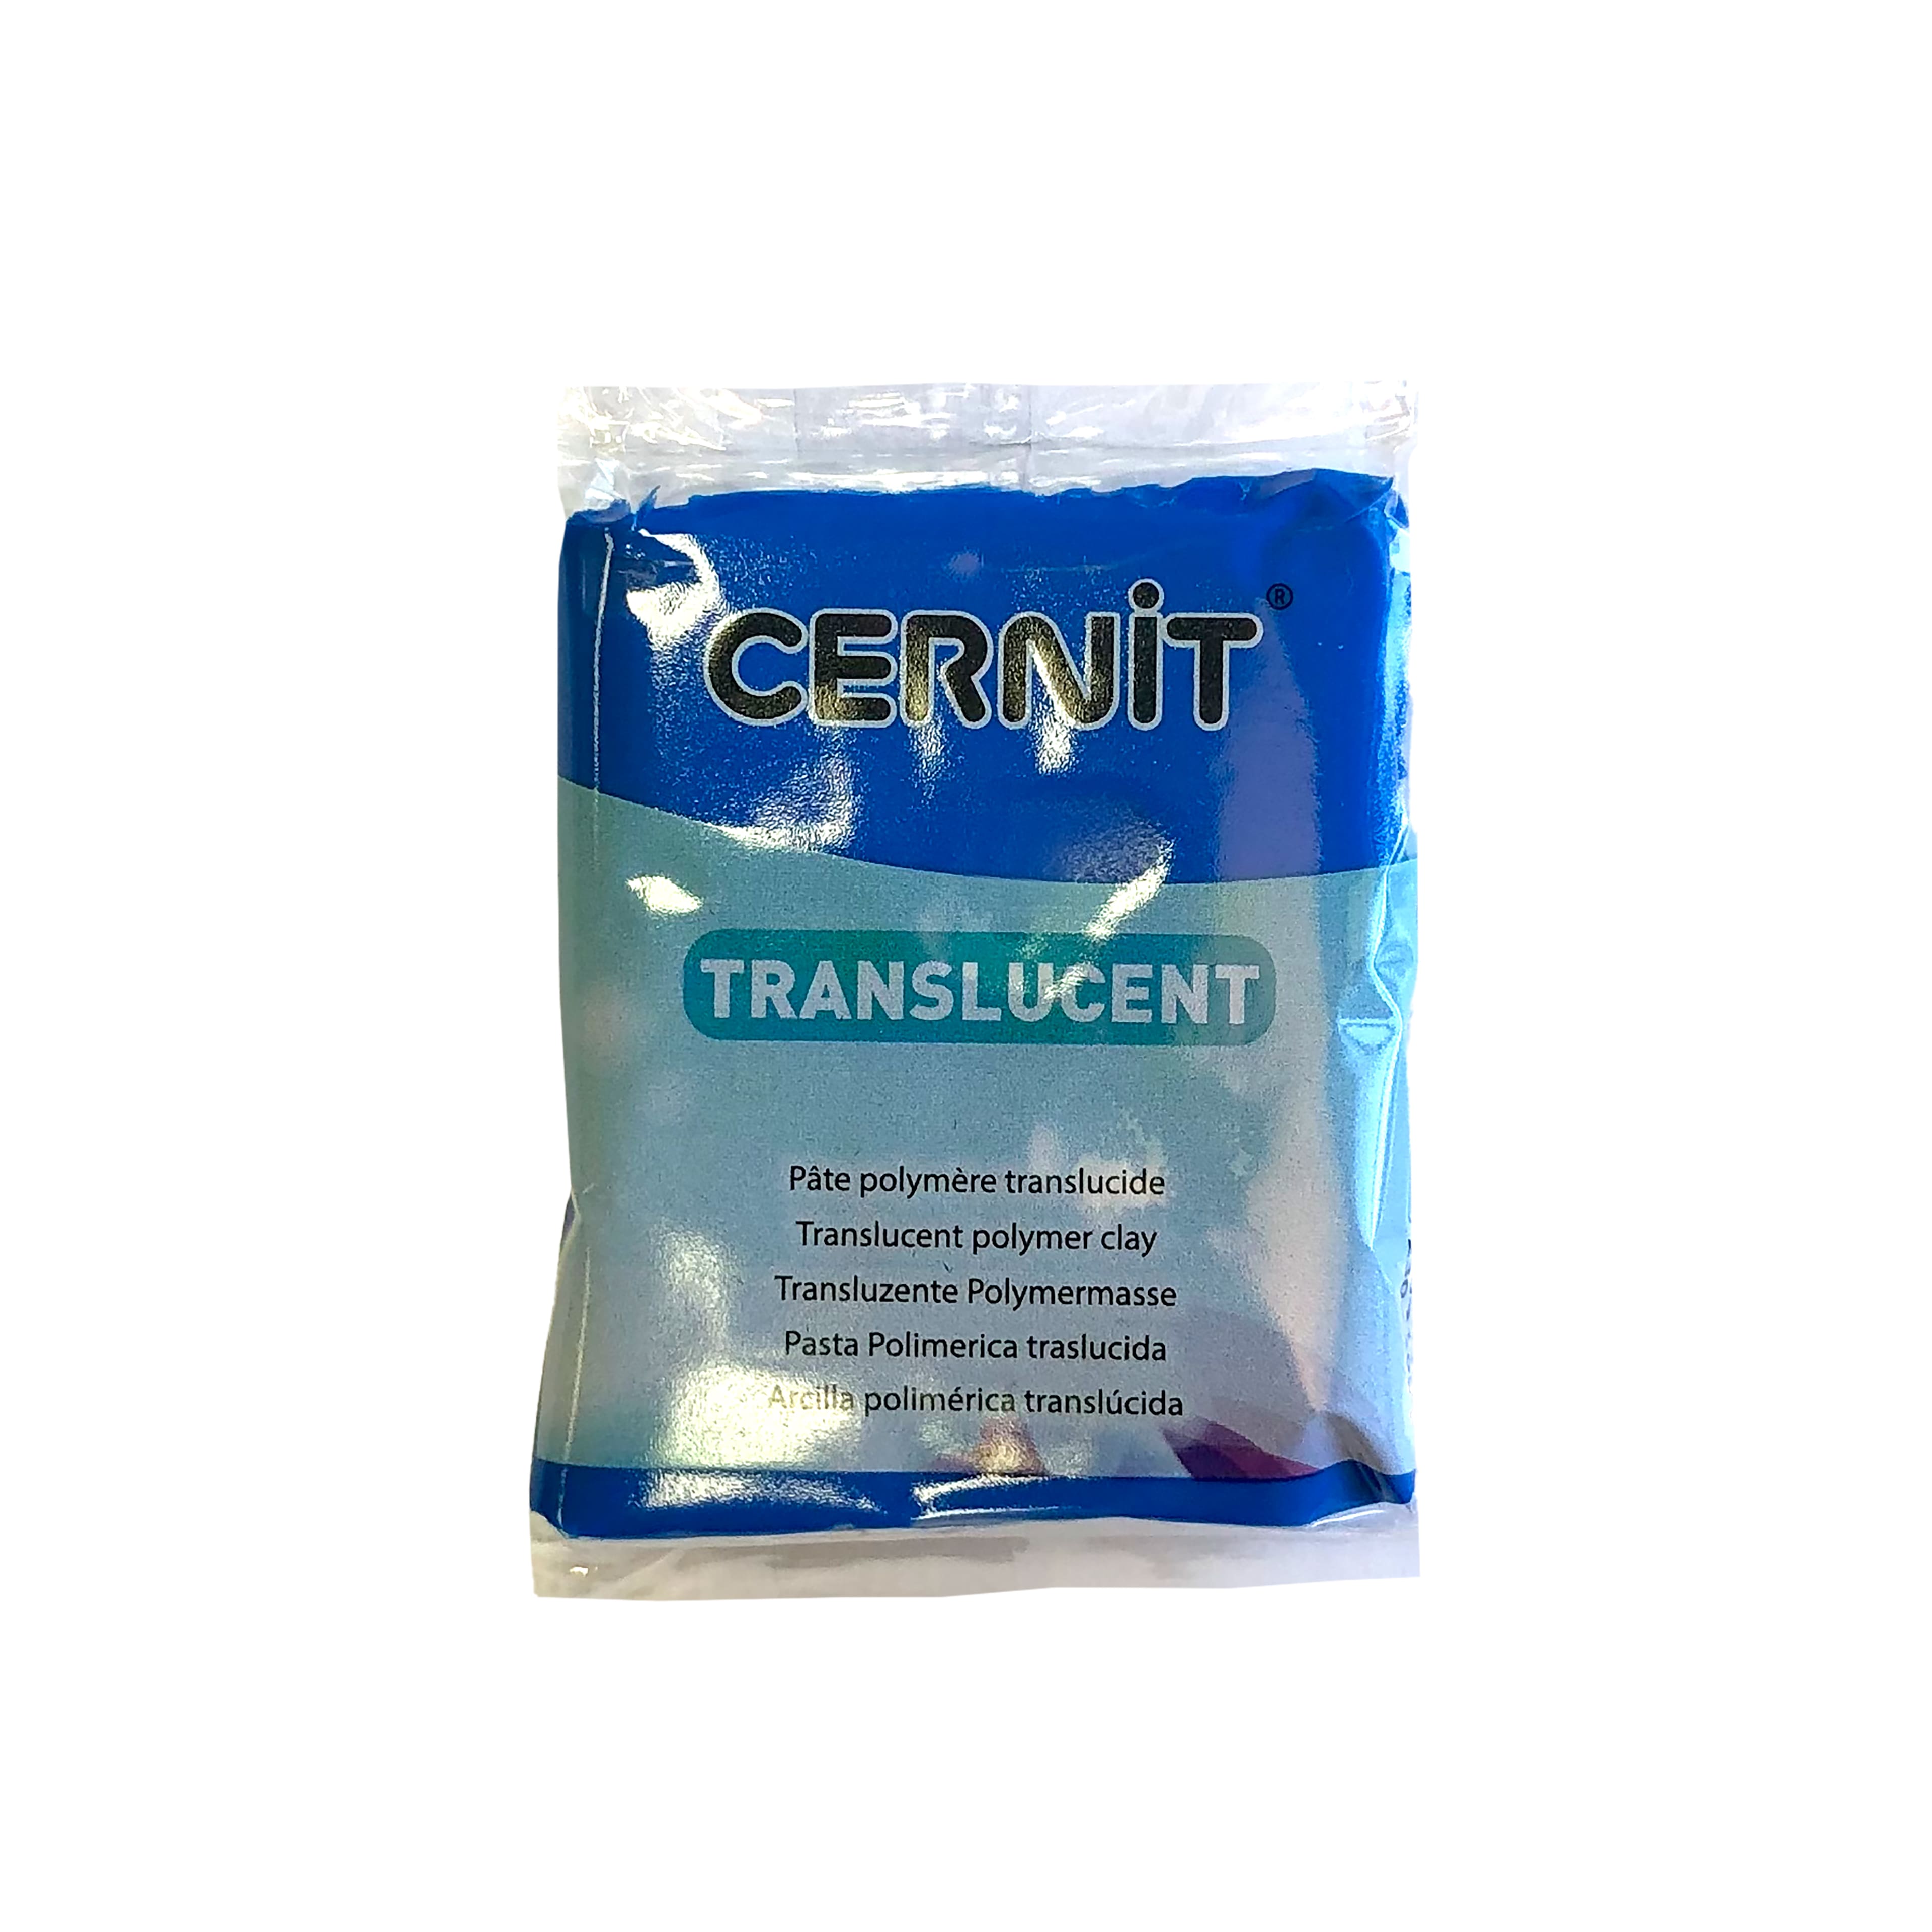 Cernit translucent clay | cernit clay 2oz | cernit polymer clay translucent